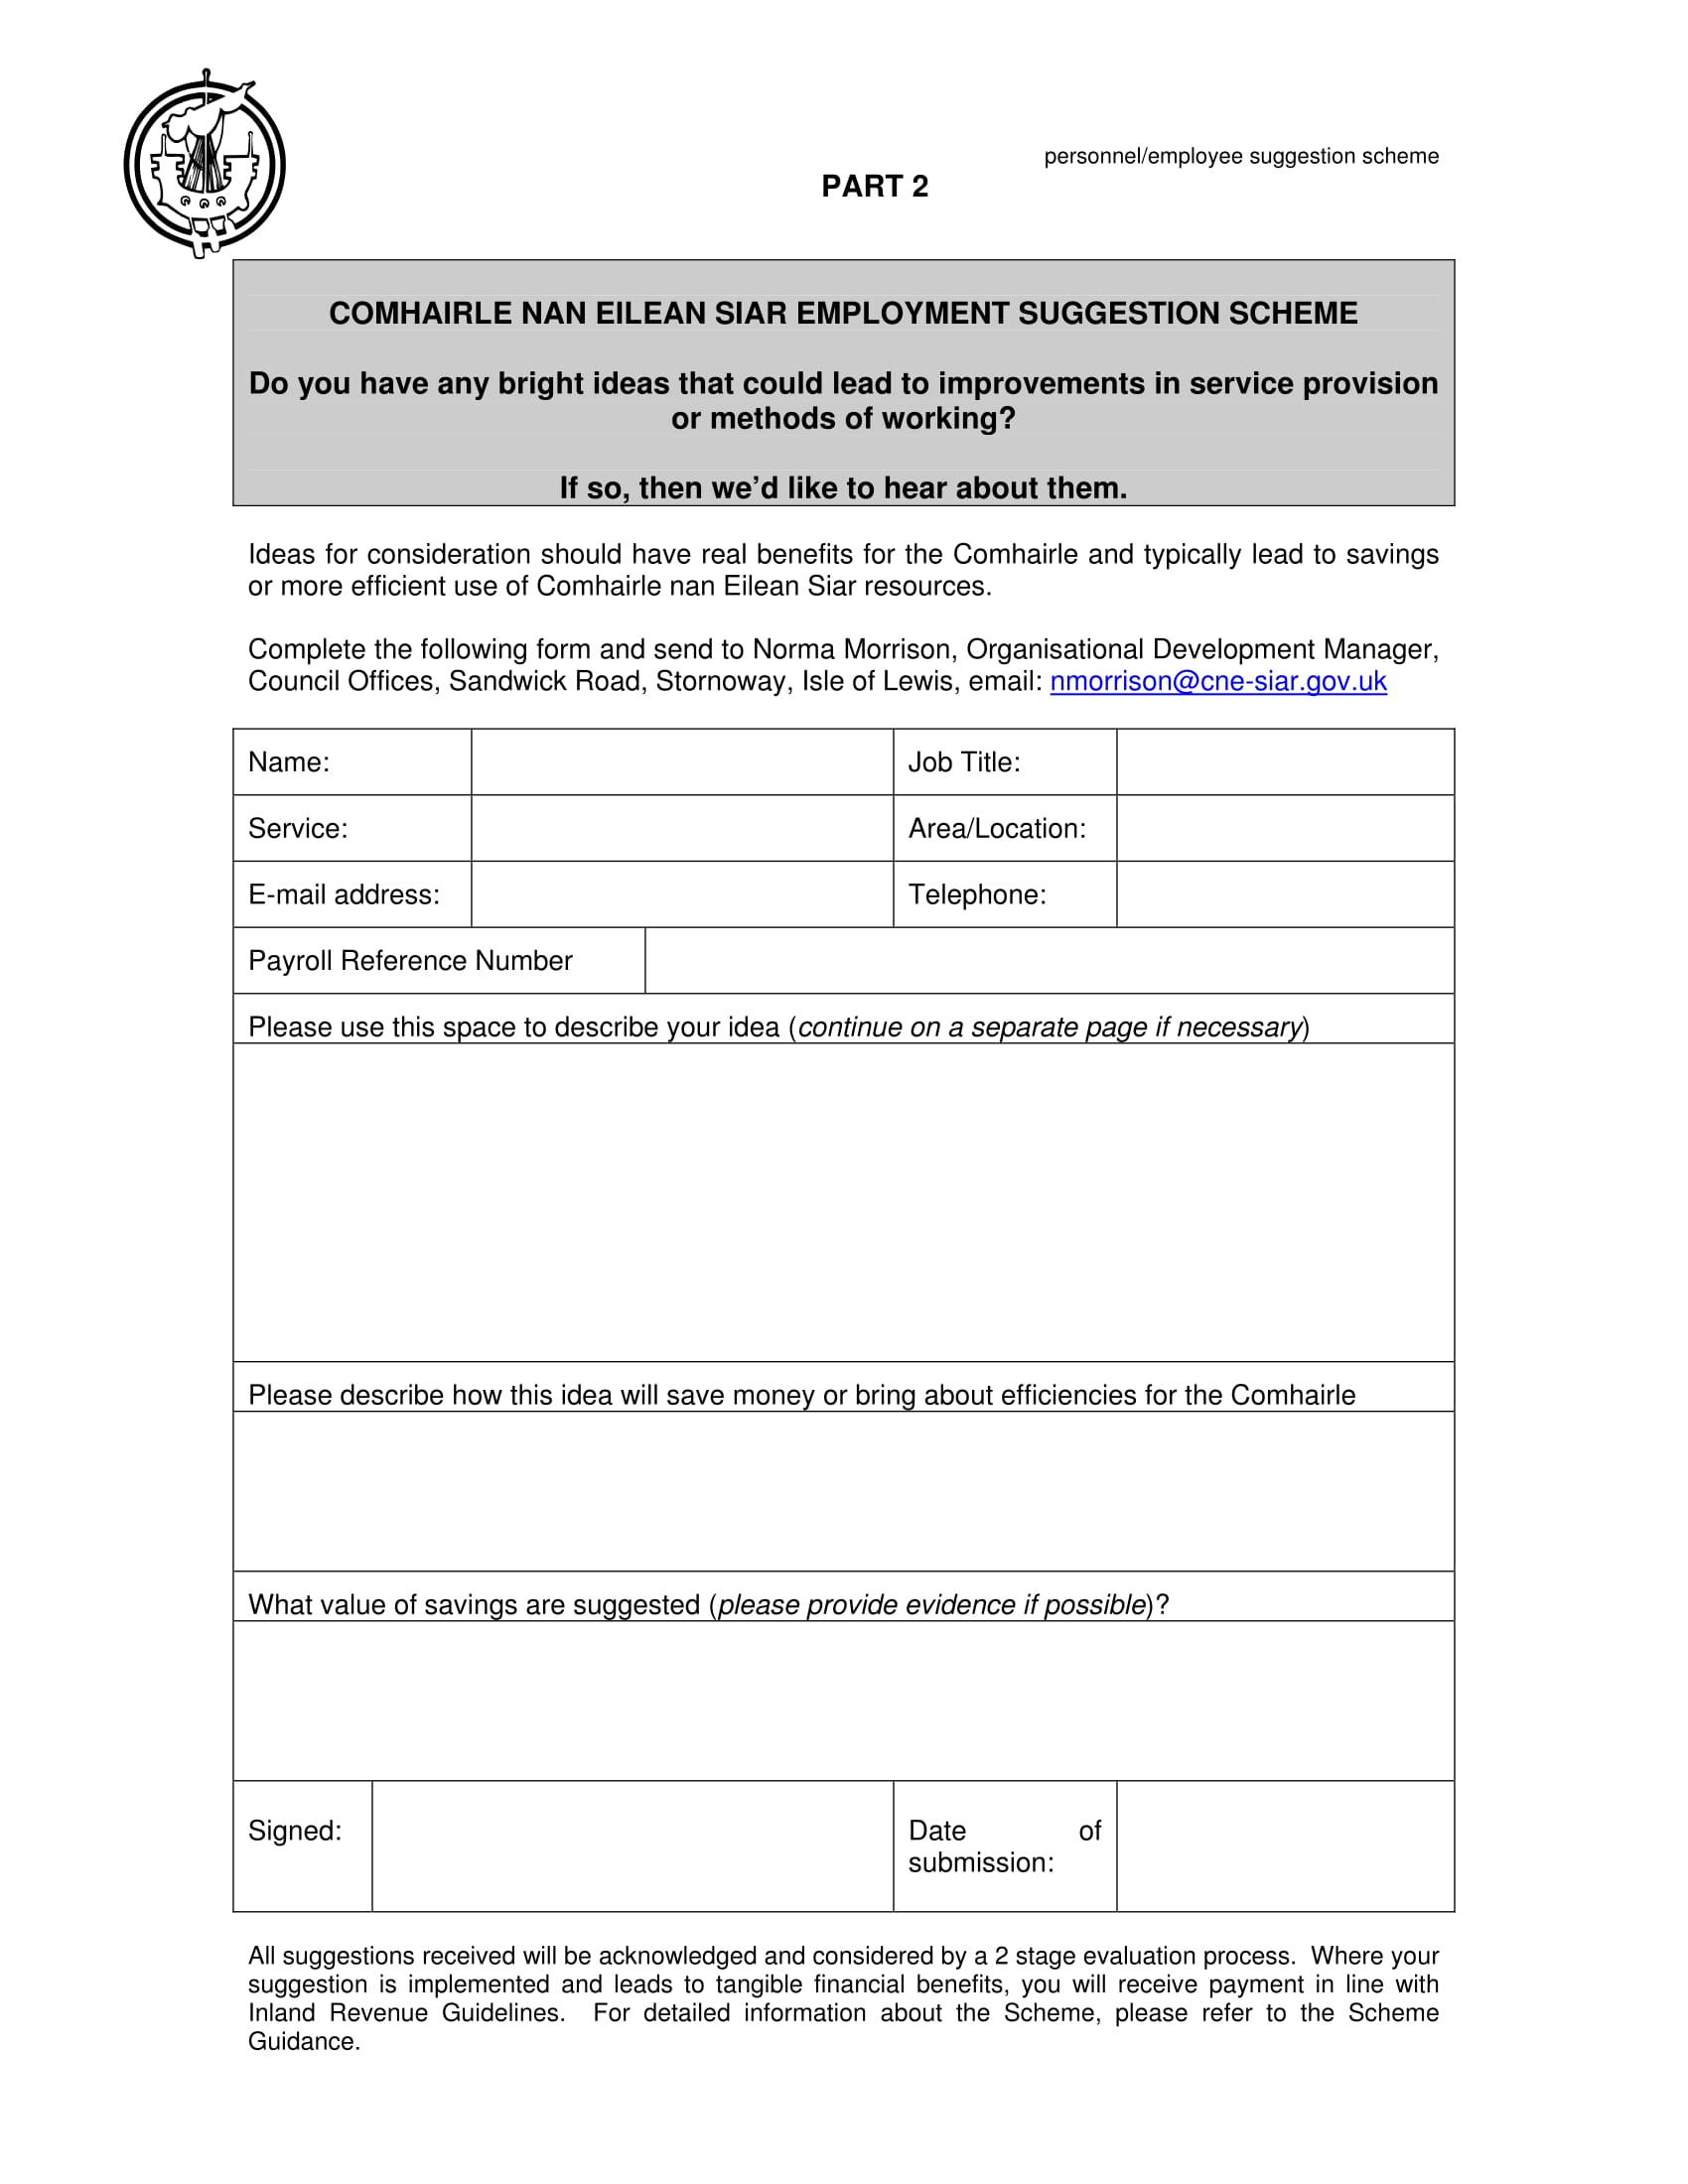 employee suggestion scheme form 5